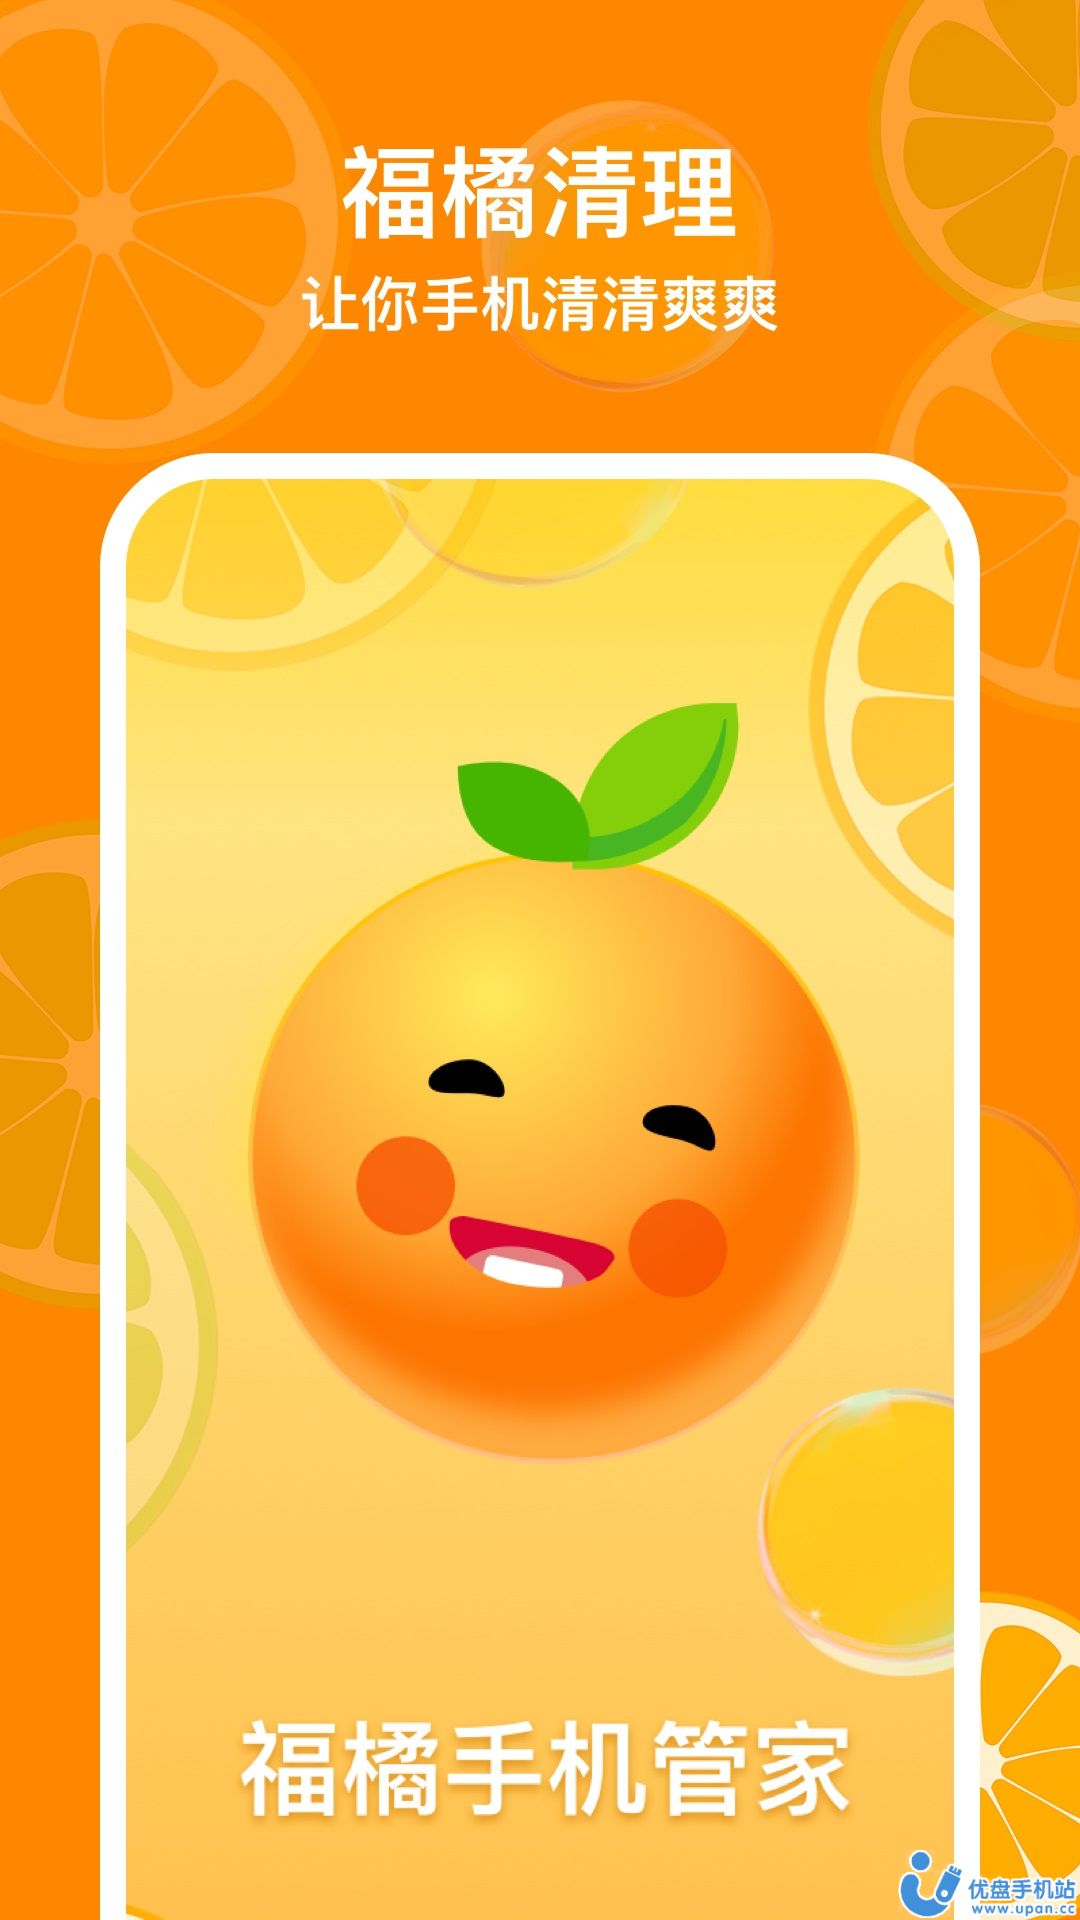 福橘手机管家app图片1